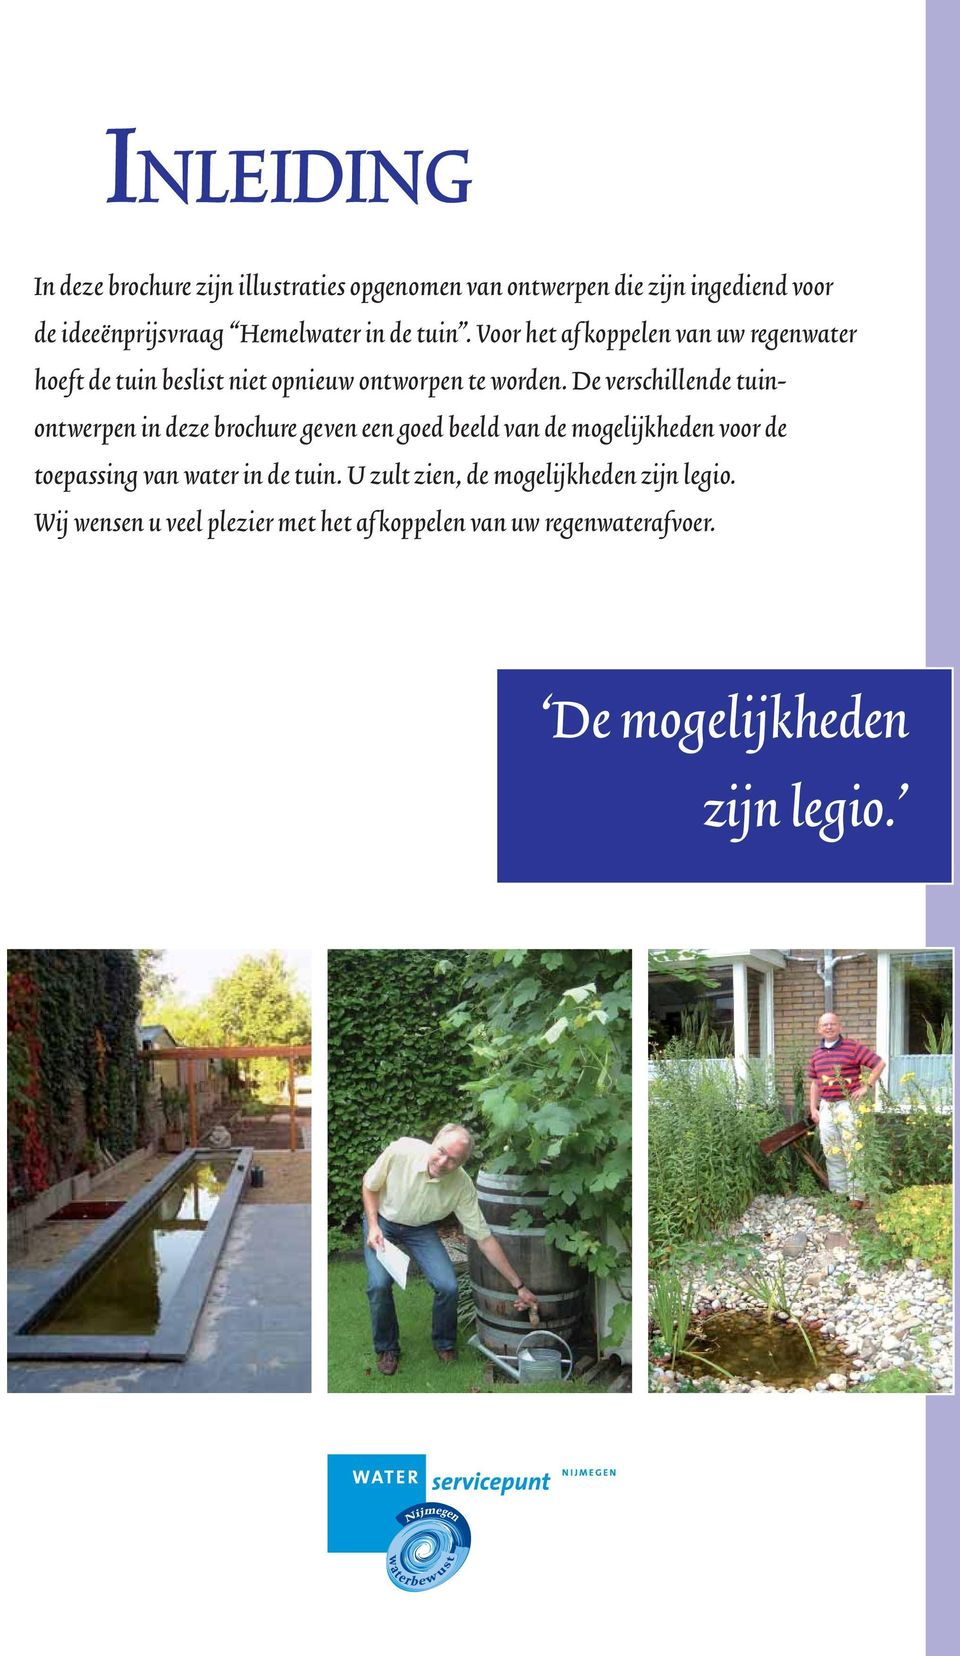 De verschillende tuinontwerpen in deze brochure geven een goed beeld van de mogelijkheden voor de toepassing van water in de